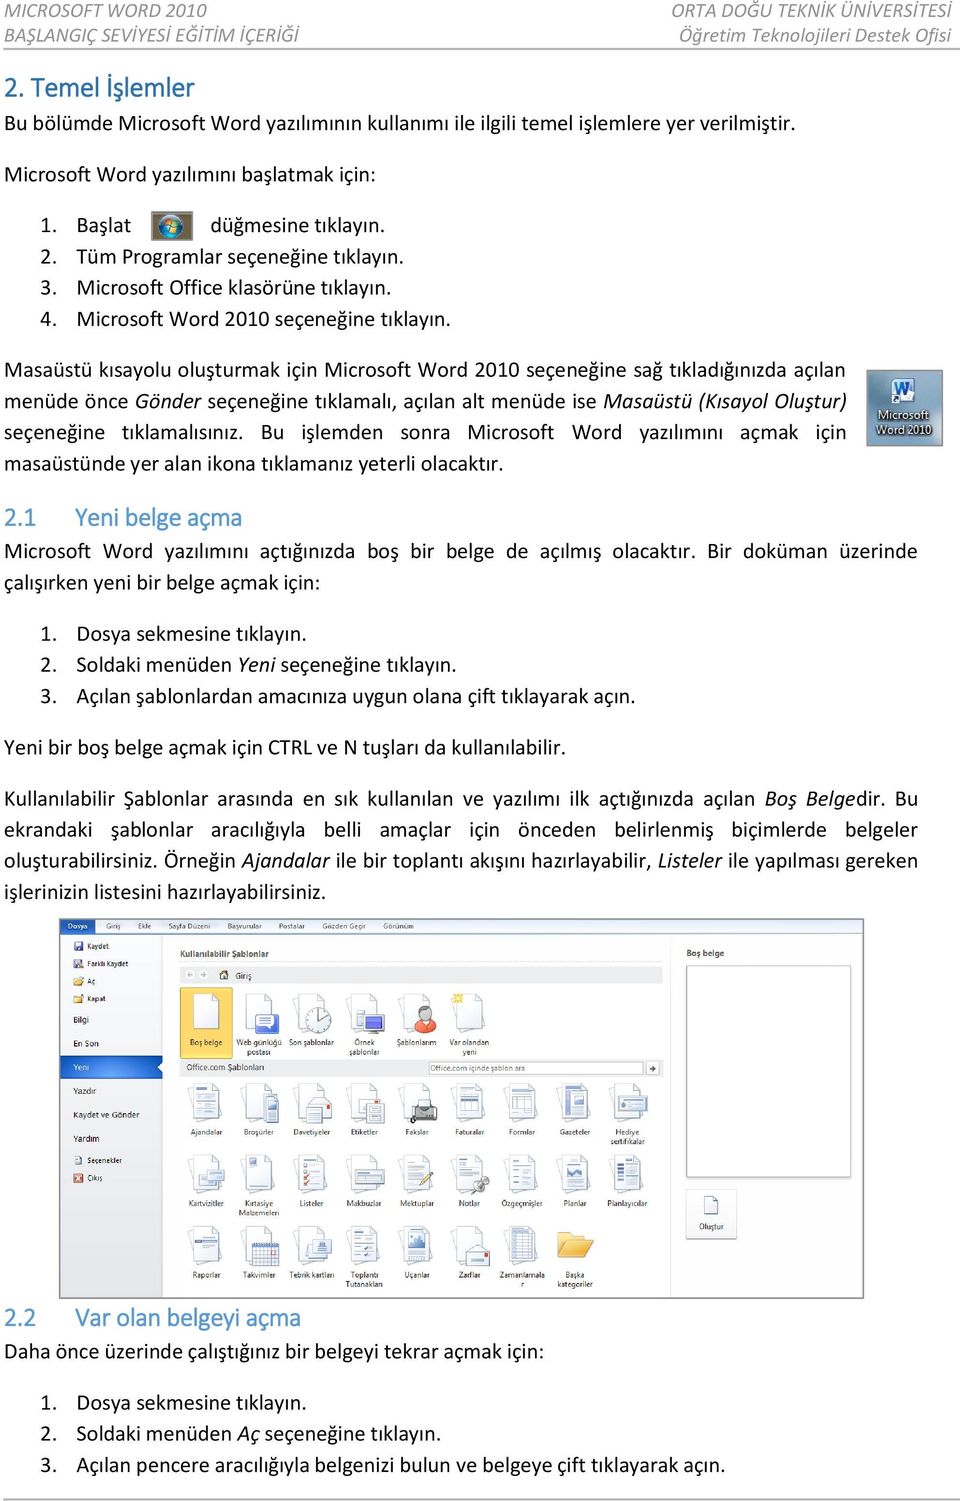 Masaüstü kısayolu oluşturmak için Microsoft Word 2010 seçeneğine sağ tıkladığınızda açılan menüde önce Gönder seçeneğine tıklamalı, açılan alt menüde ise Masaüstü (Kısayol Oluştur) seçeneğine